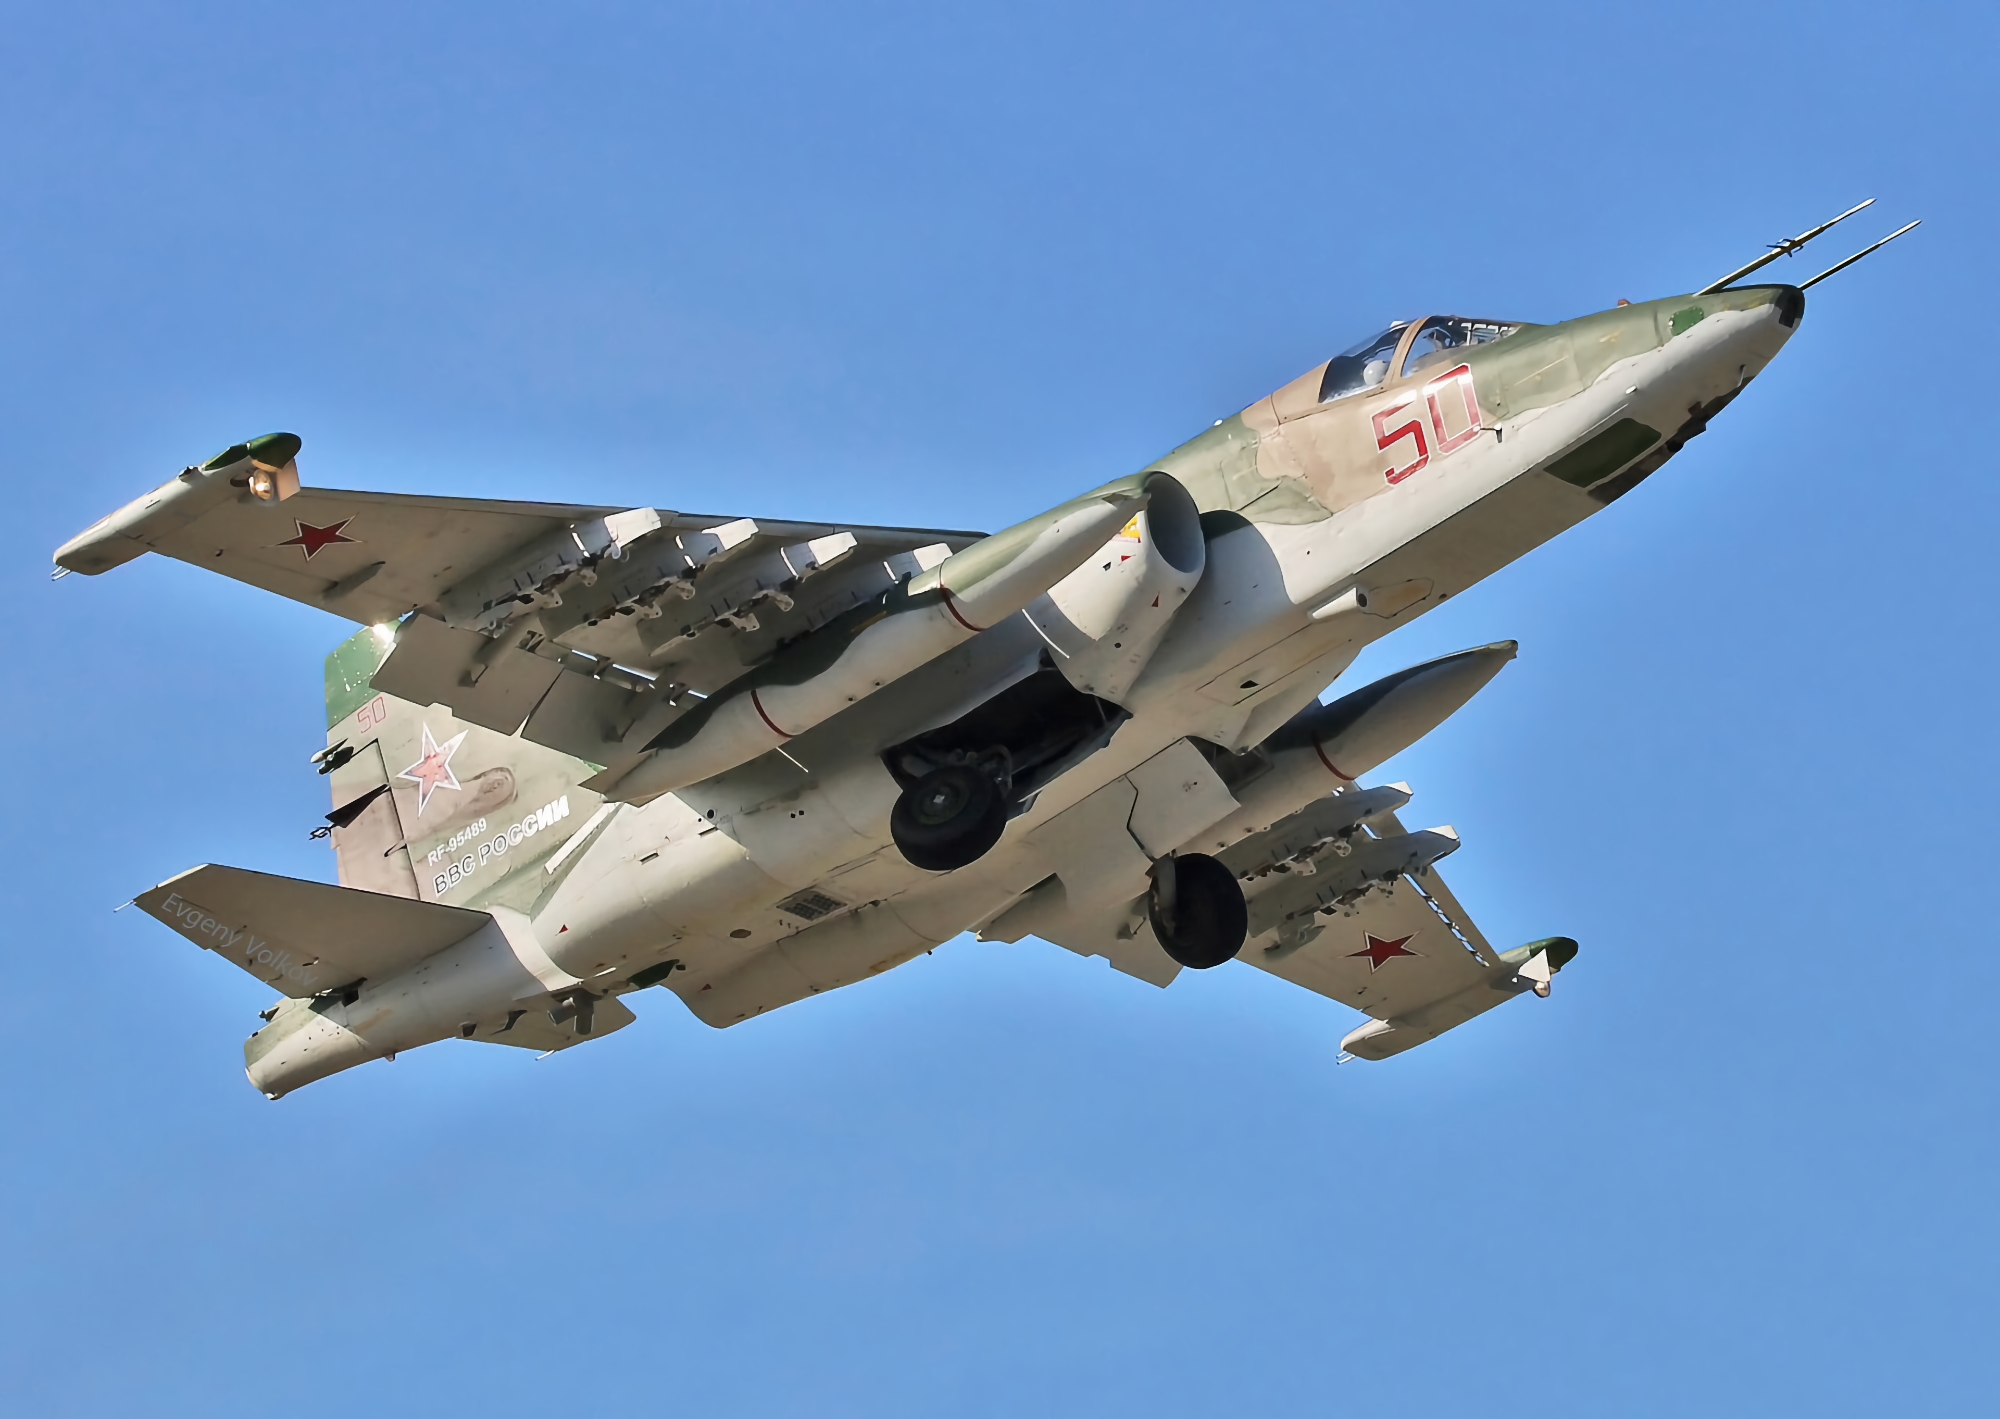 Rosyjski SU-25 rozbił się bez pomocy Sił Zbrojnych